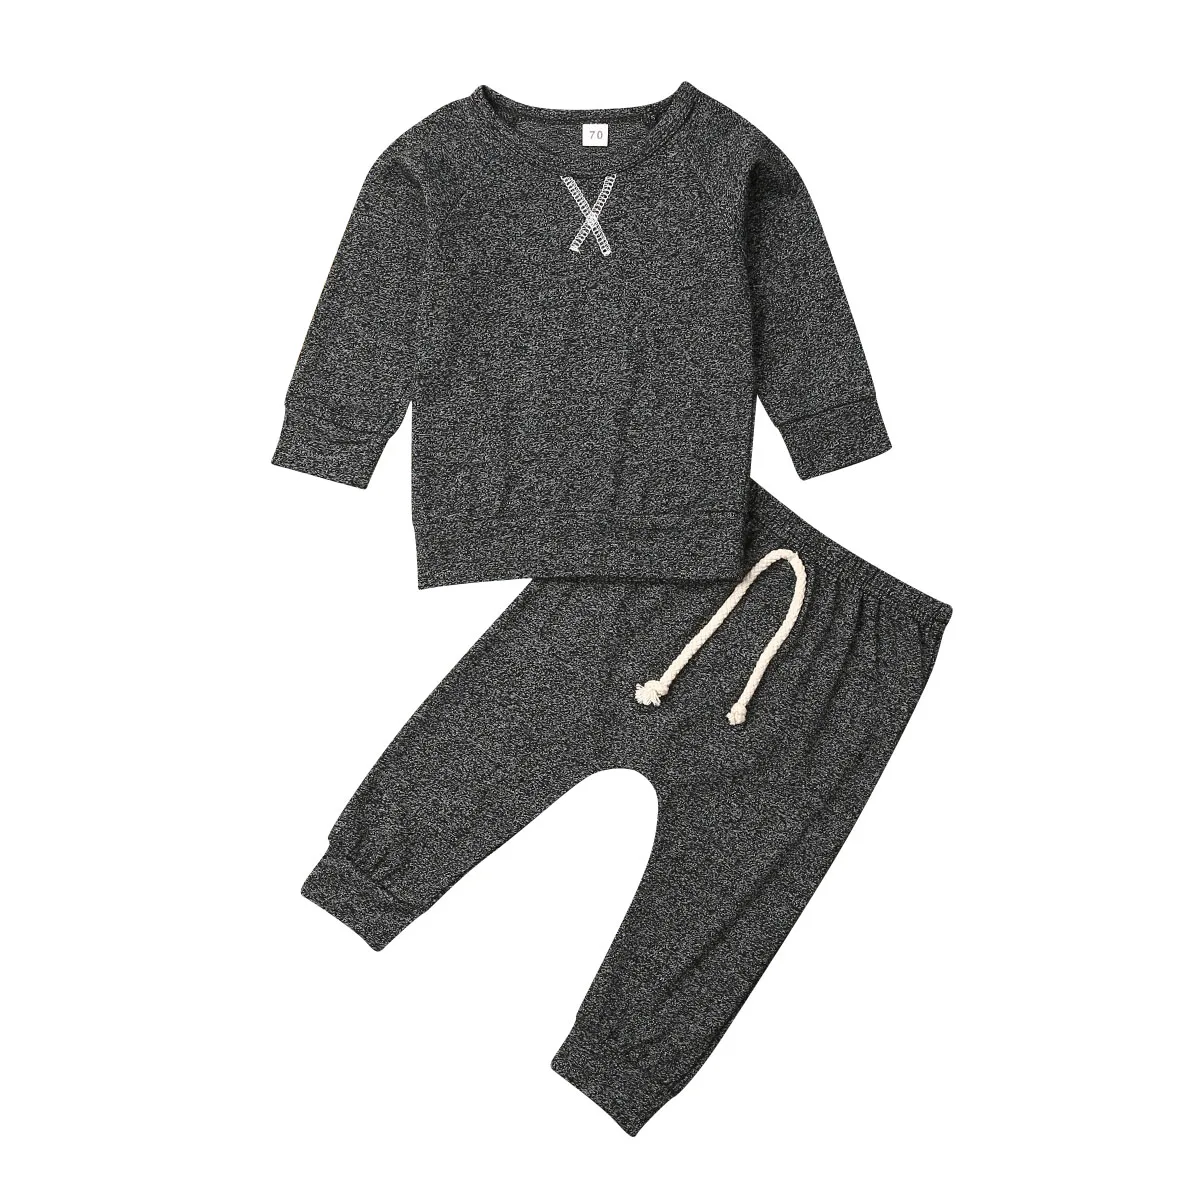 Одежда для новорожденных мальчиков и девочек, футболка, топ+ штаны, Осенние комплекты одежды для детей 0-24 месяцев - Цвет: Черный